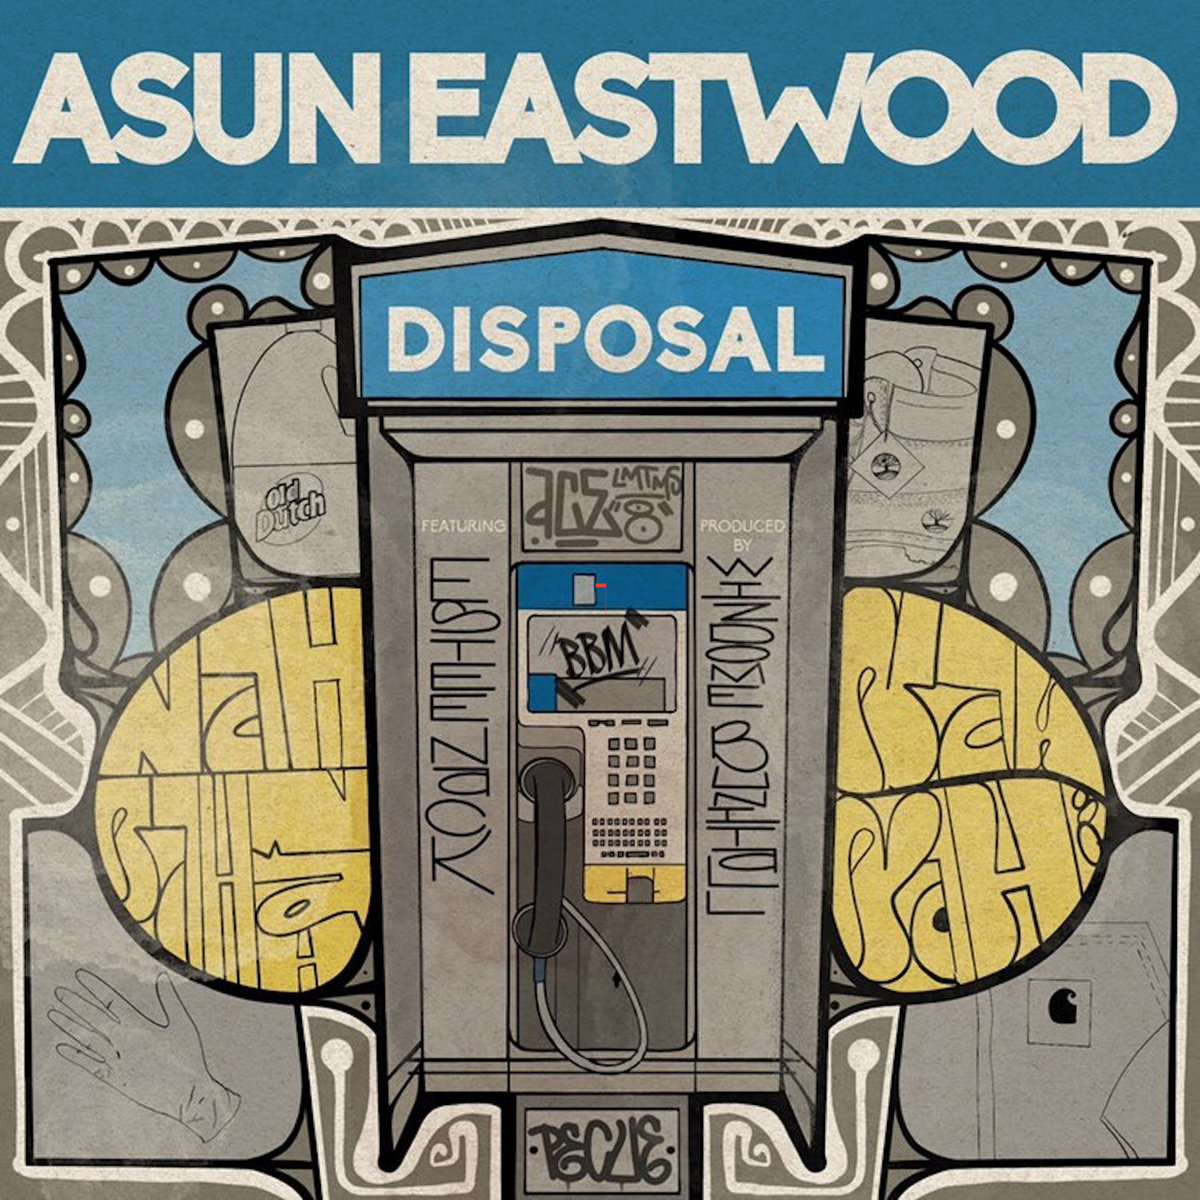 Disposal_estee_nack_asun_eastwood